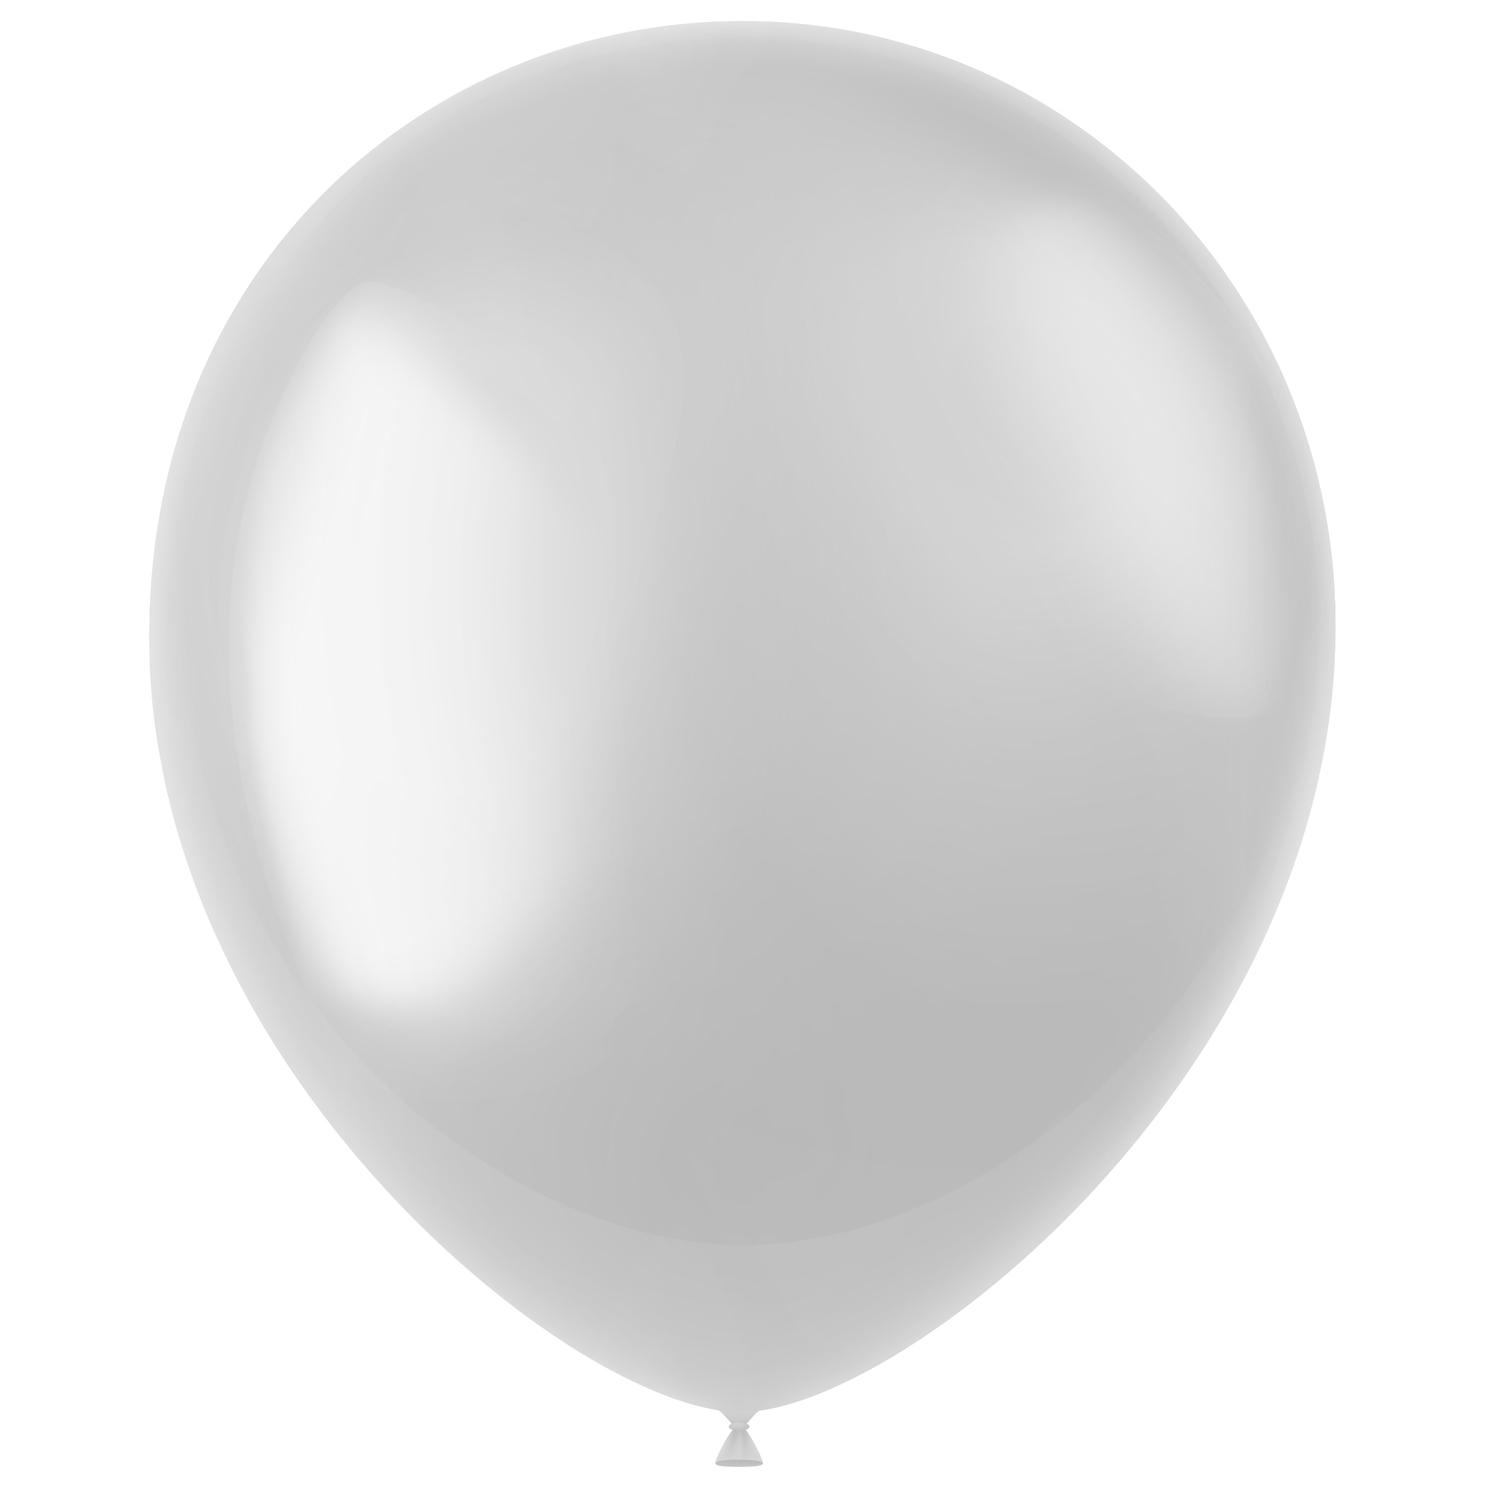 Latex-Luftballons glänzend, 33cm, weiß, 50 Stück, Metallic-Ballons